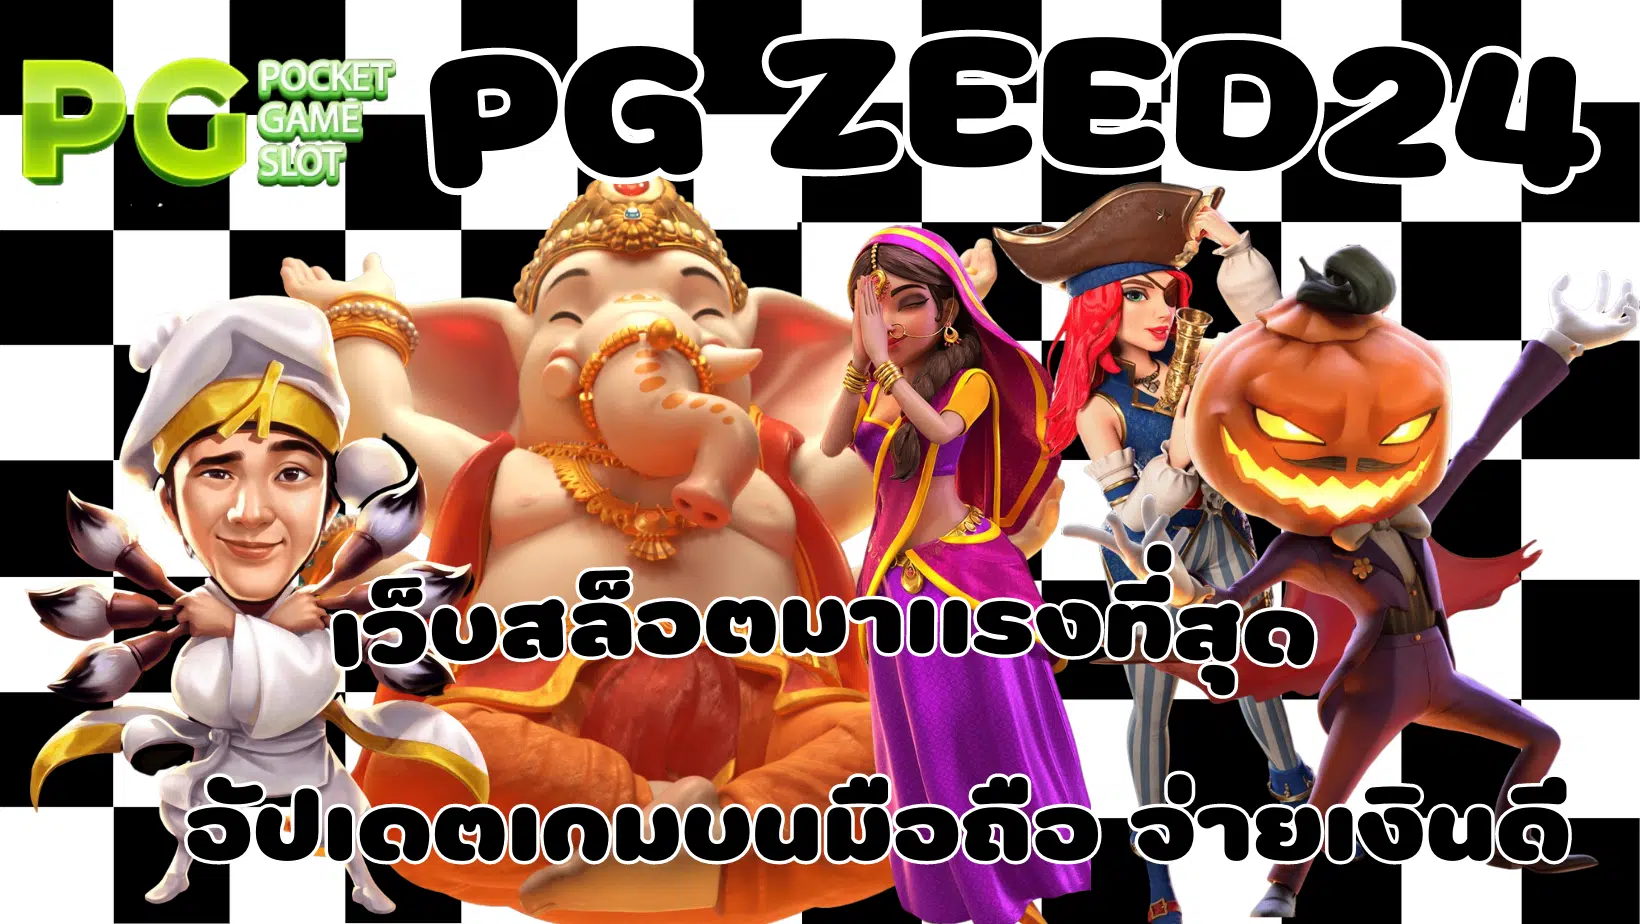 PG-zeed24-เว็บสล็อตมาแรงที่สุด